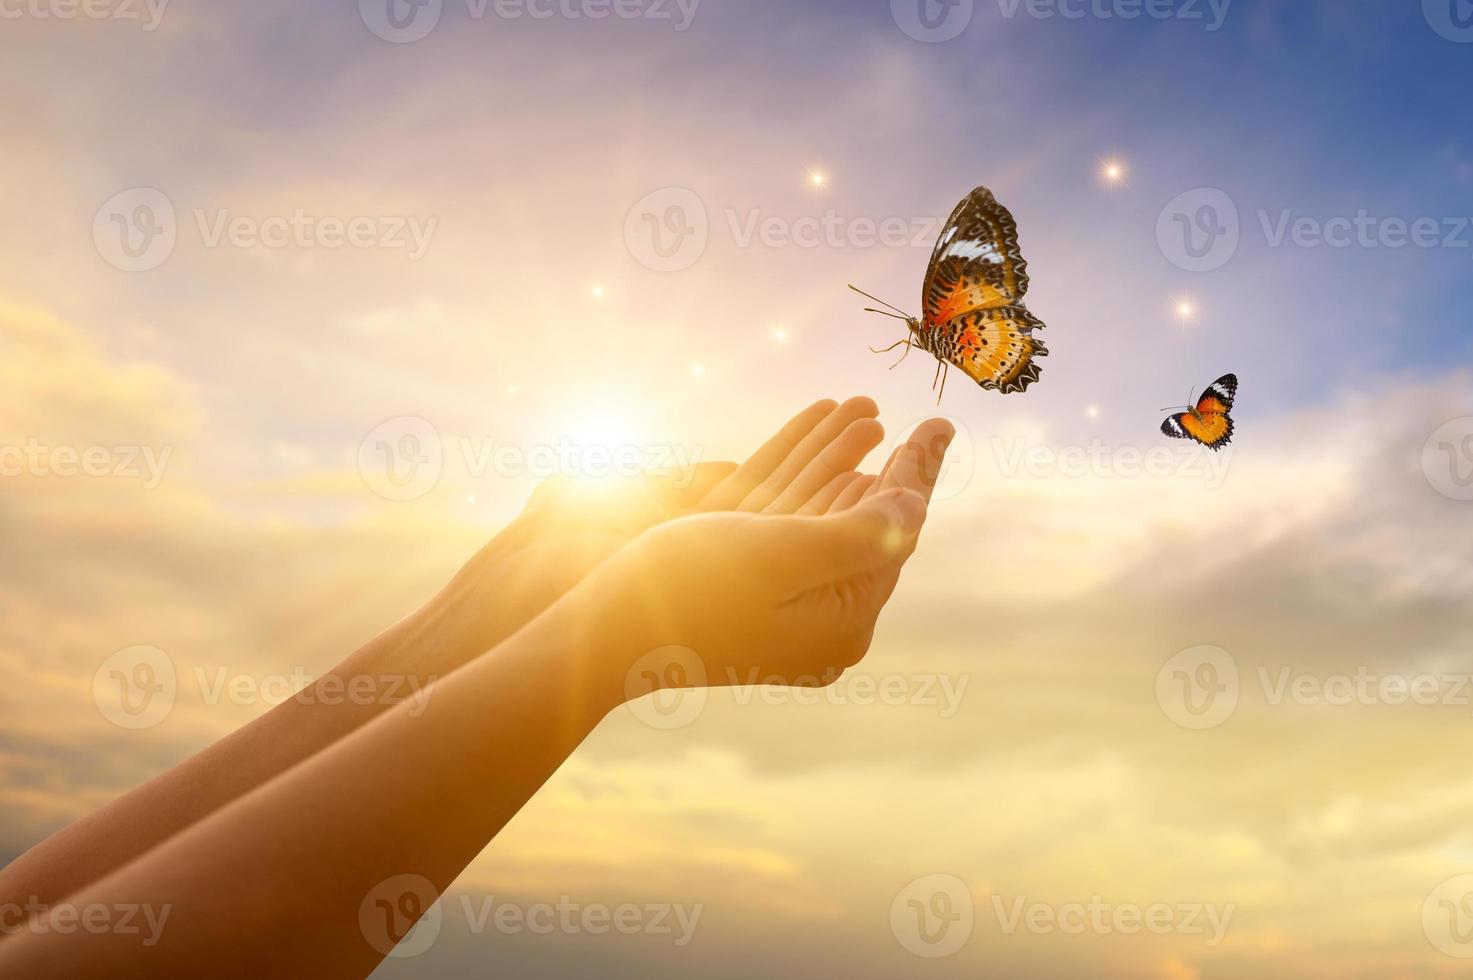 a menina liberta a borboleta do conceito de liberdade momentânea foto